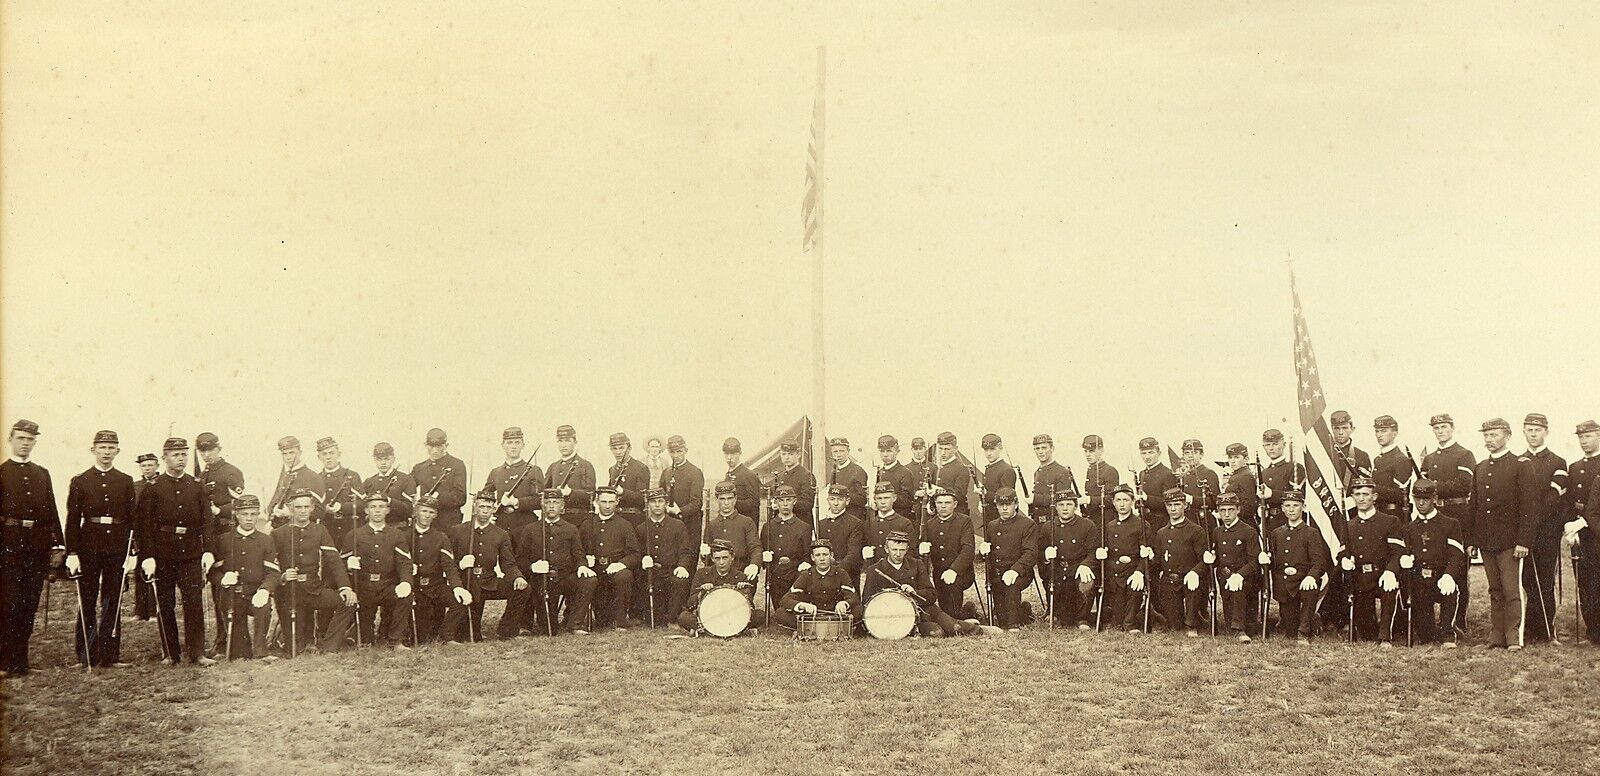 USA Military Regiment Encampment D.H. S.C., 1889 Antique Photo by Collier